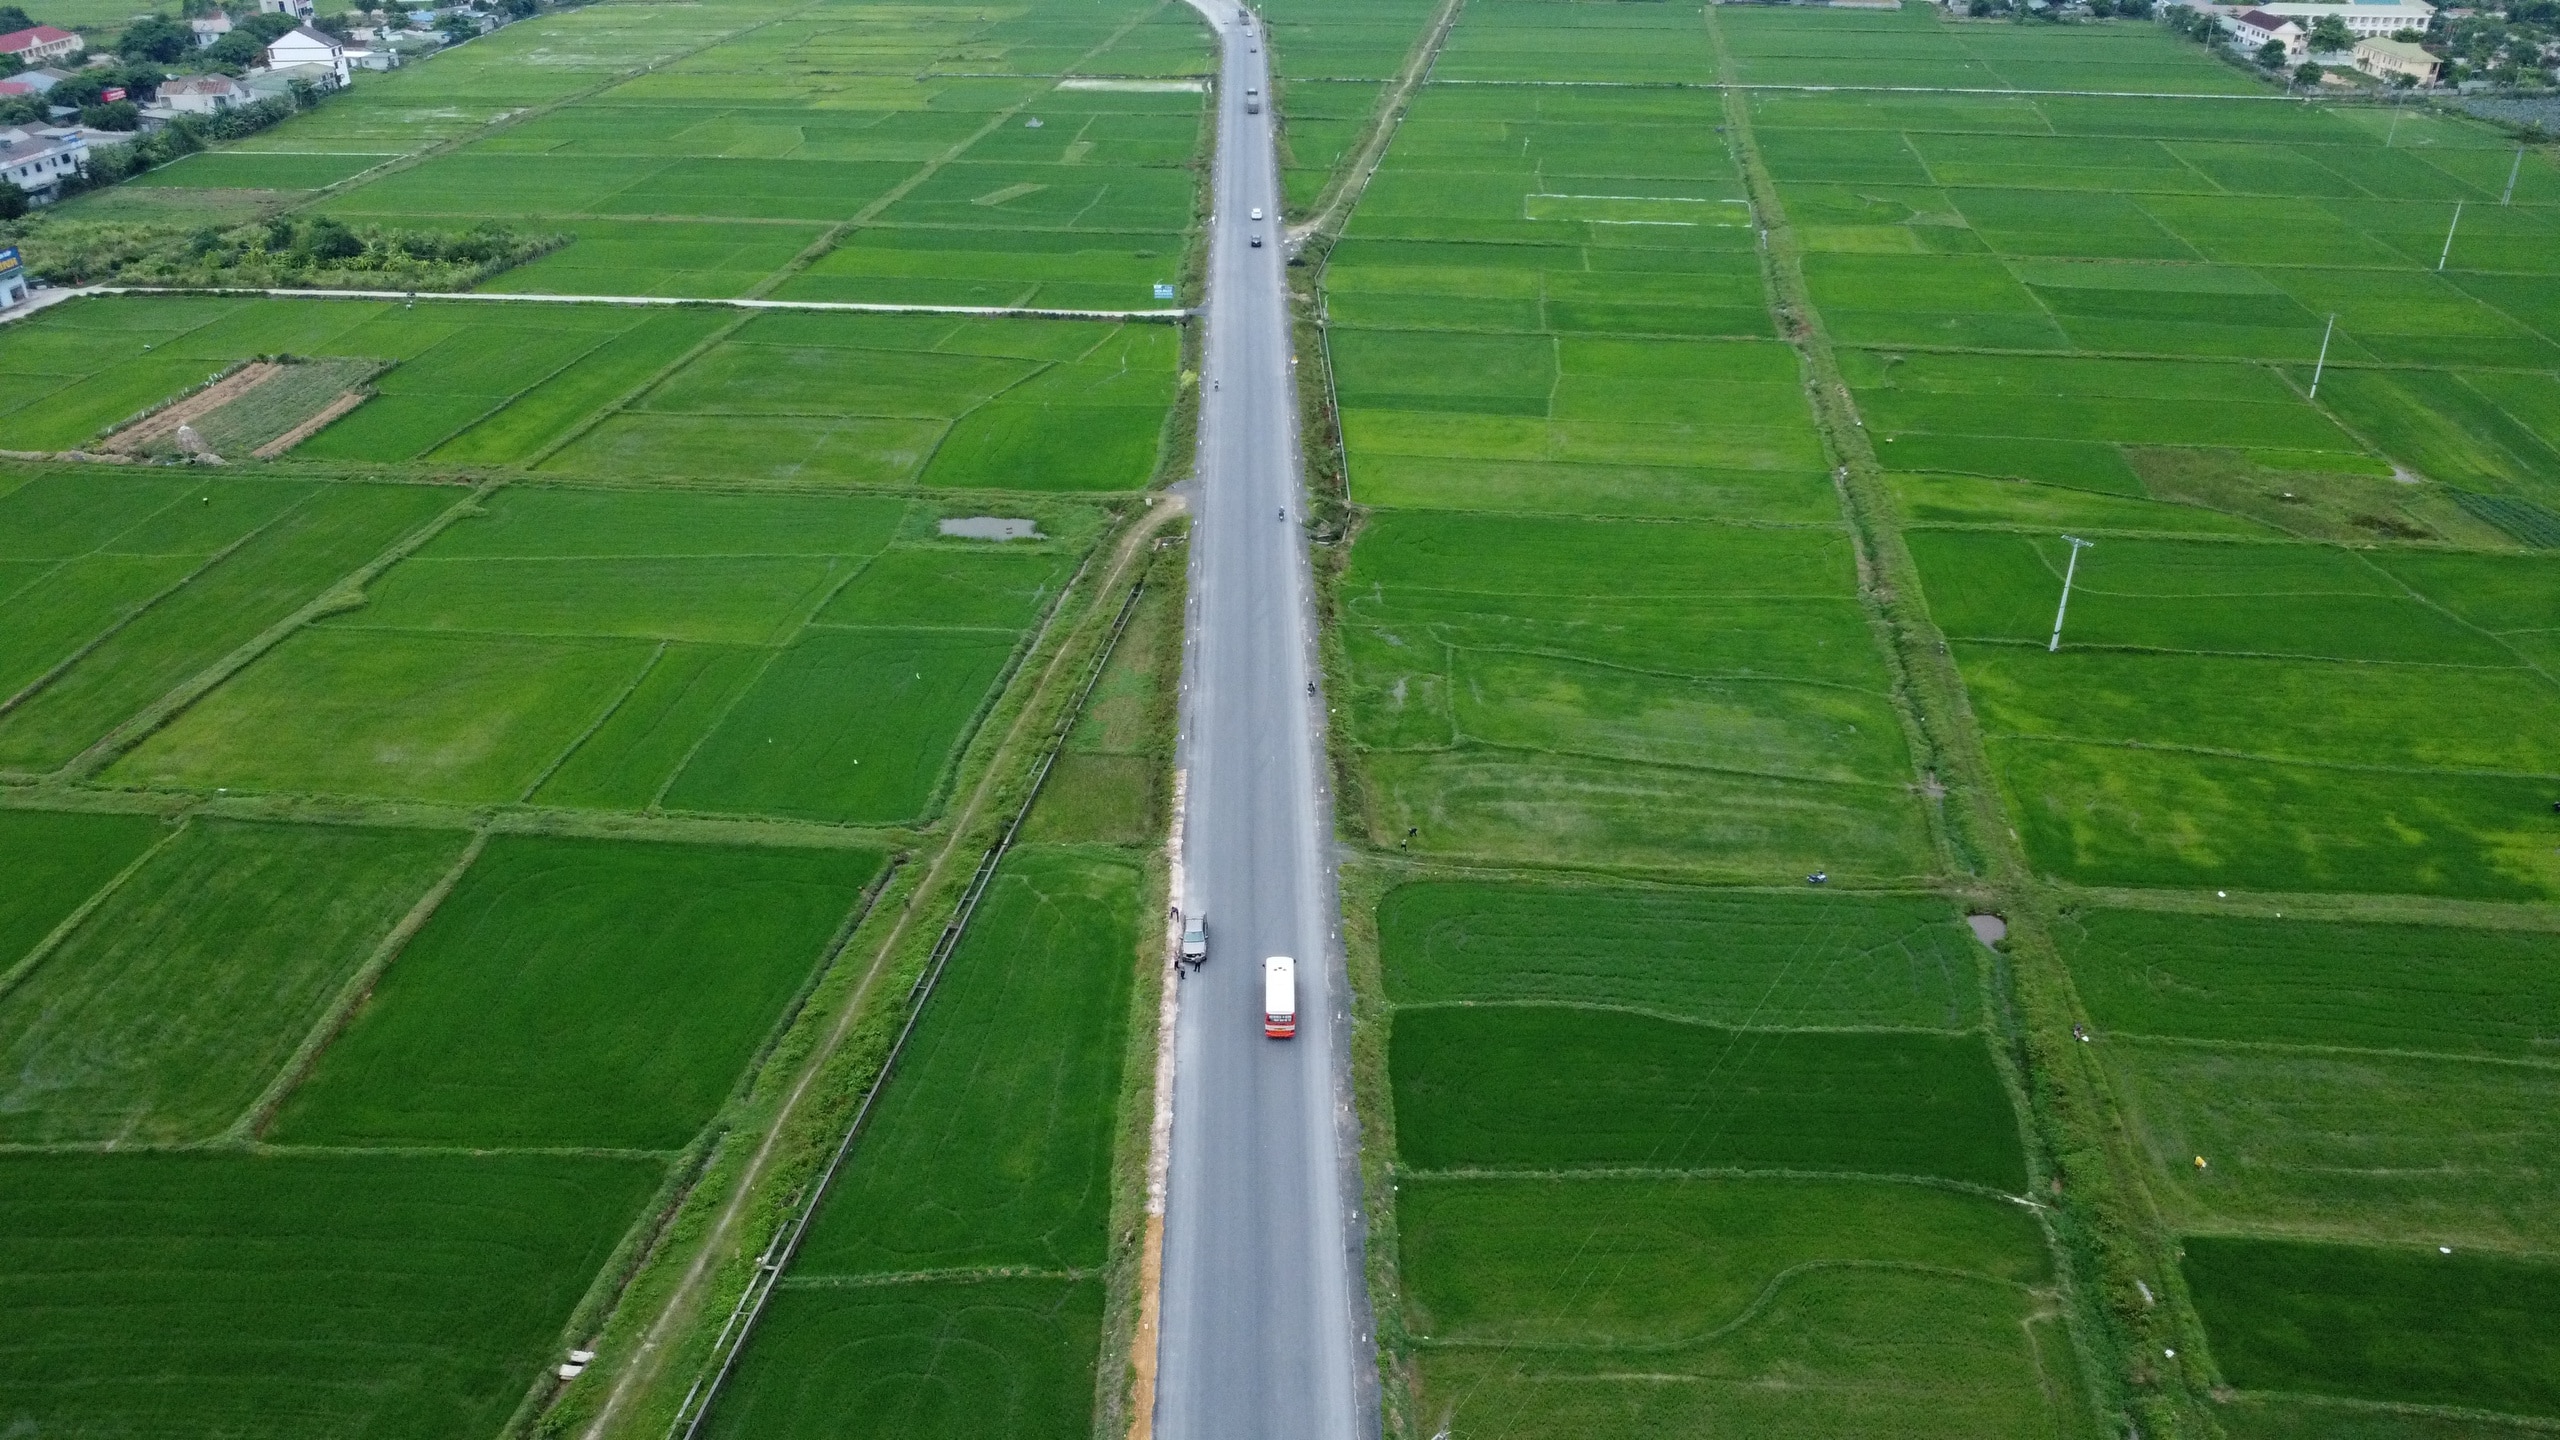 Nỗ lực nâng cấp, sửa chữa, tối ưu hiệu quả khai thác các tuyến đường ở xứ Nghệ- Ảnh 5.